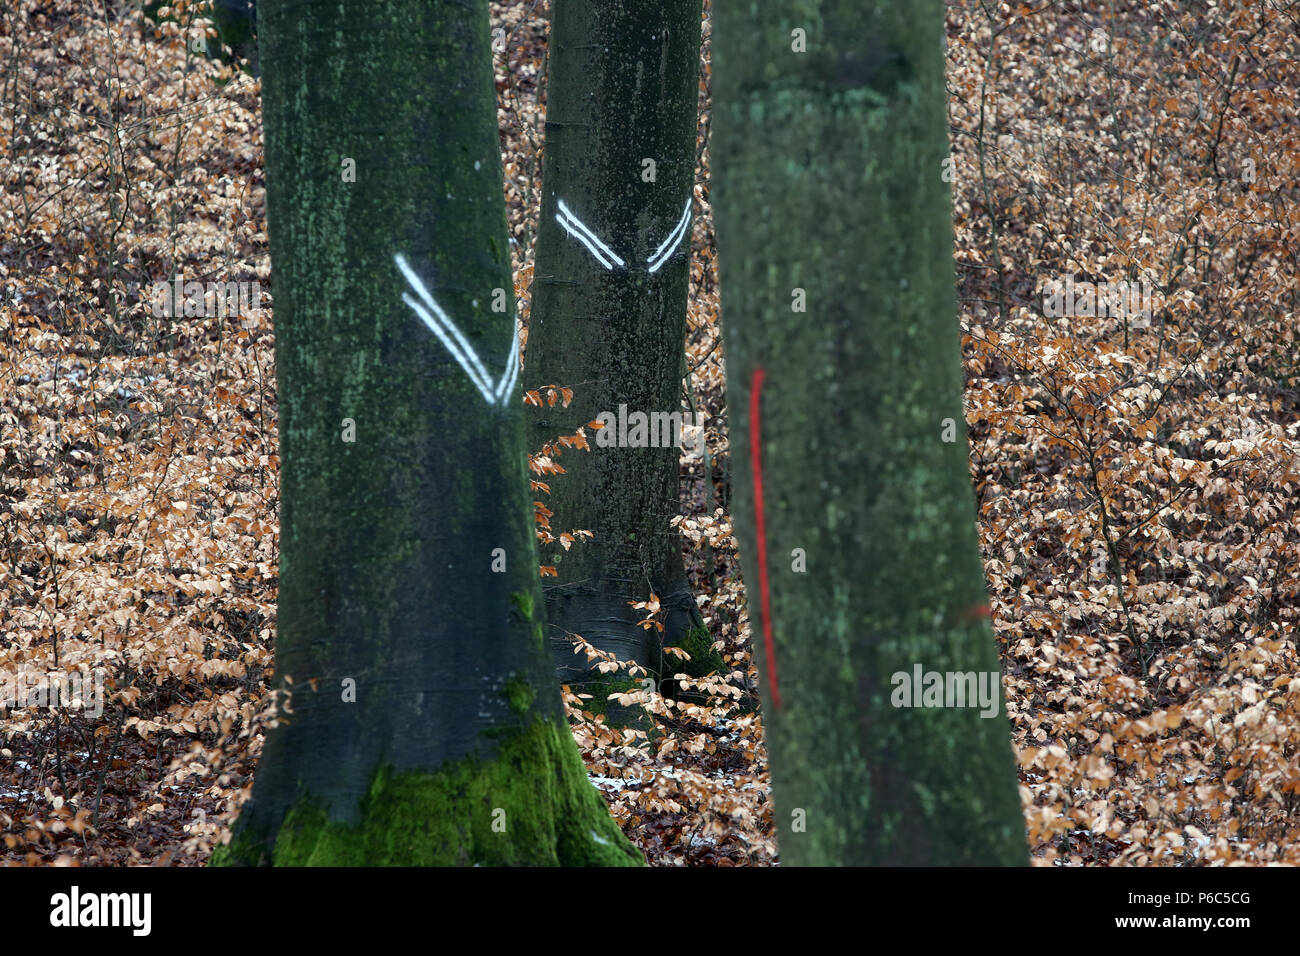 Nueva Kaetwin, Alemania - marcas en los troncos de los árboles en el bosque Foto de stock